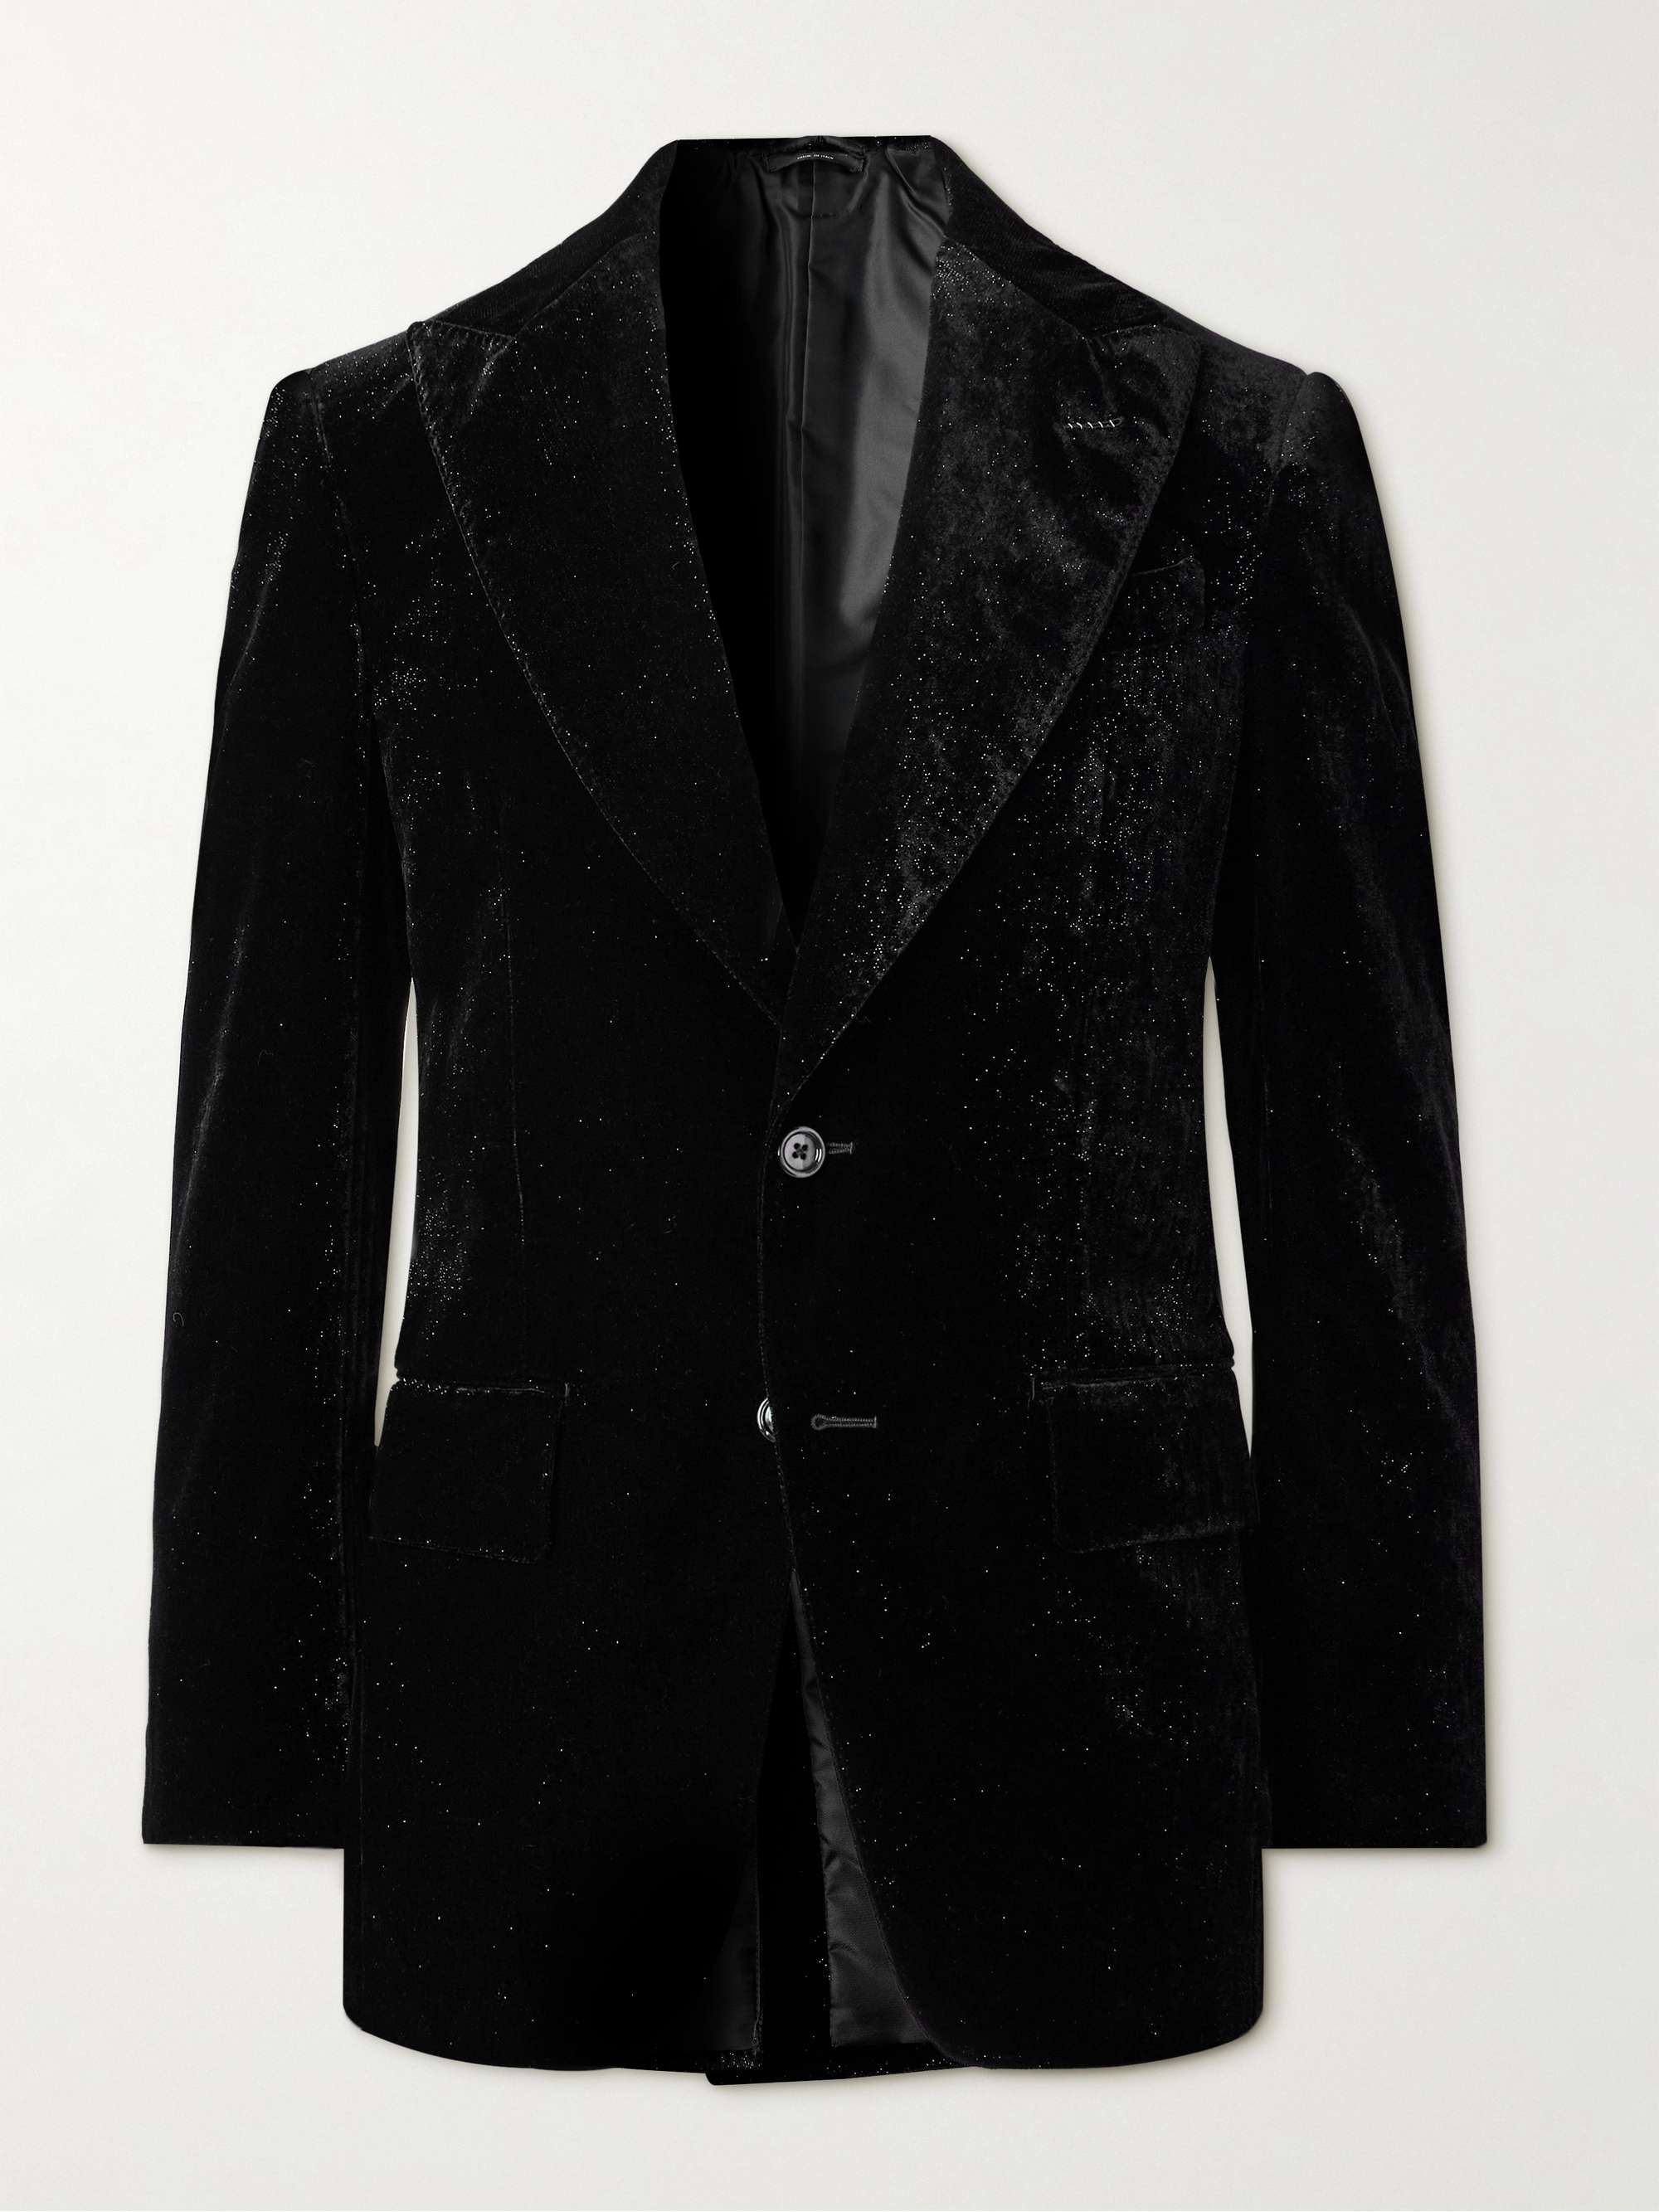 TOM FORD Atticus Metallic Velvet Tuxedo Jacket for Men | MR PORTER